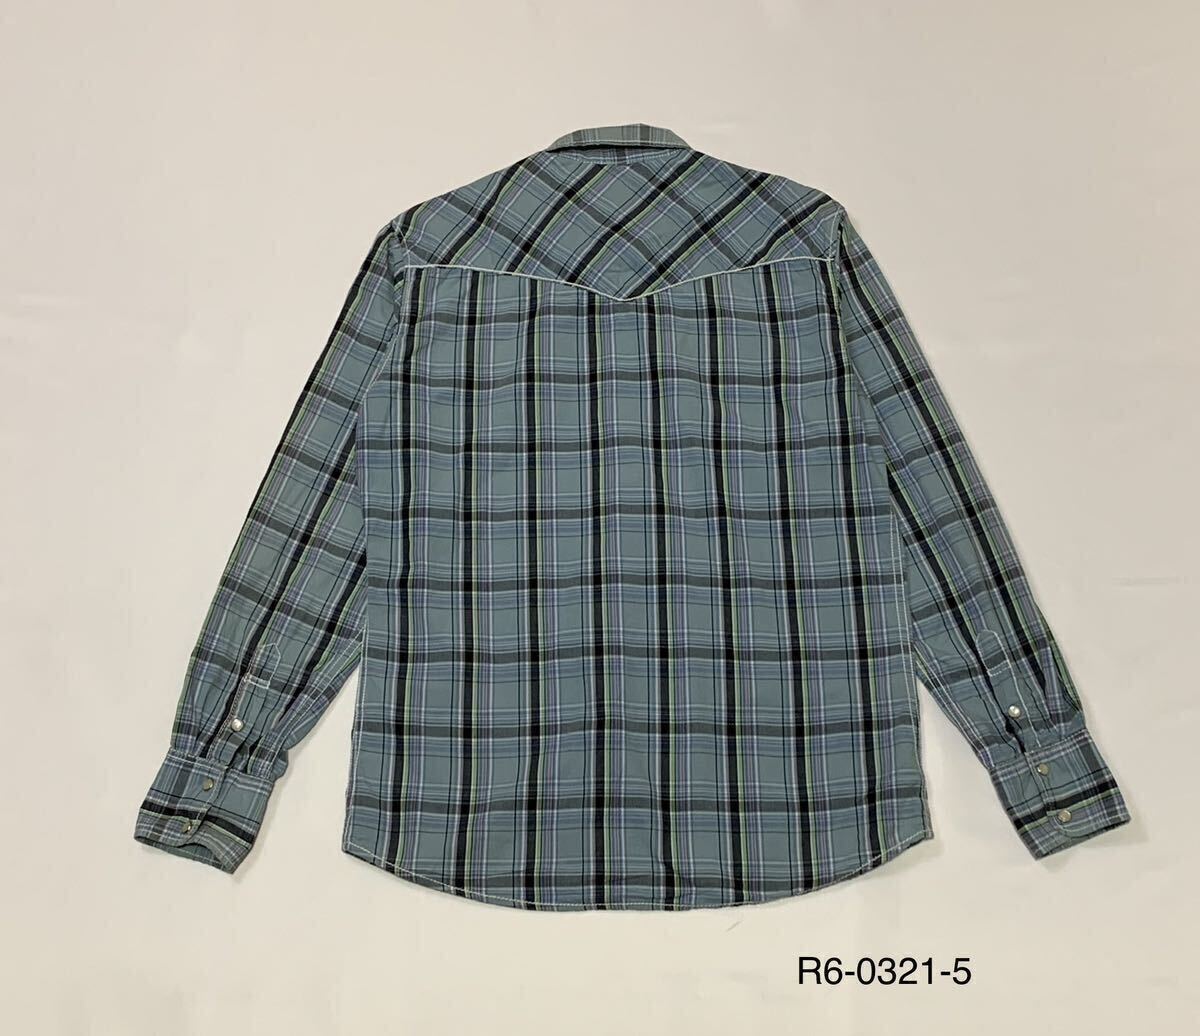 ALPHASOPHY アルファソフィー // 長袖 チェック柄 刺繍 ウエスタン シャツ (ライトブルー系) サイズ Mの画像2